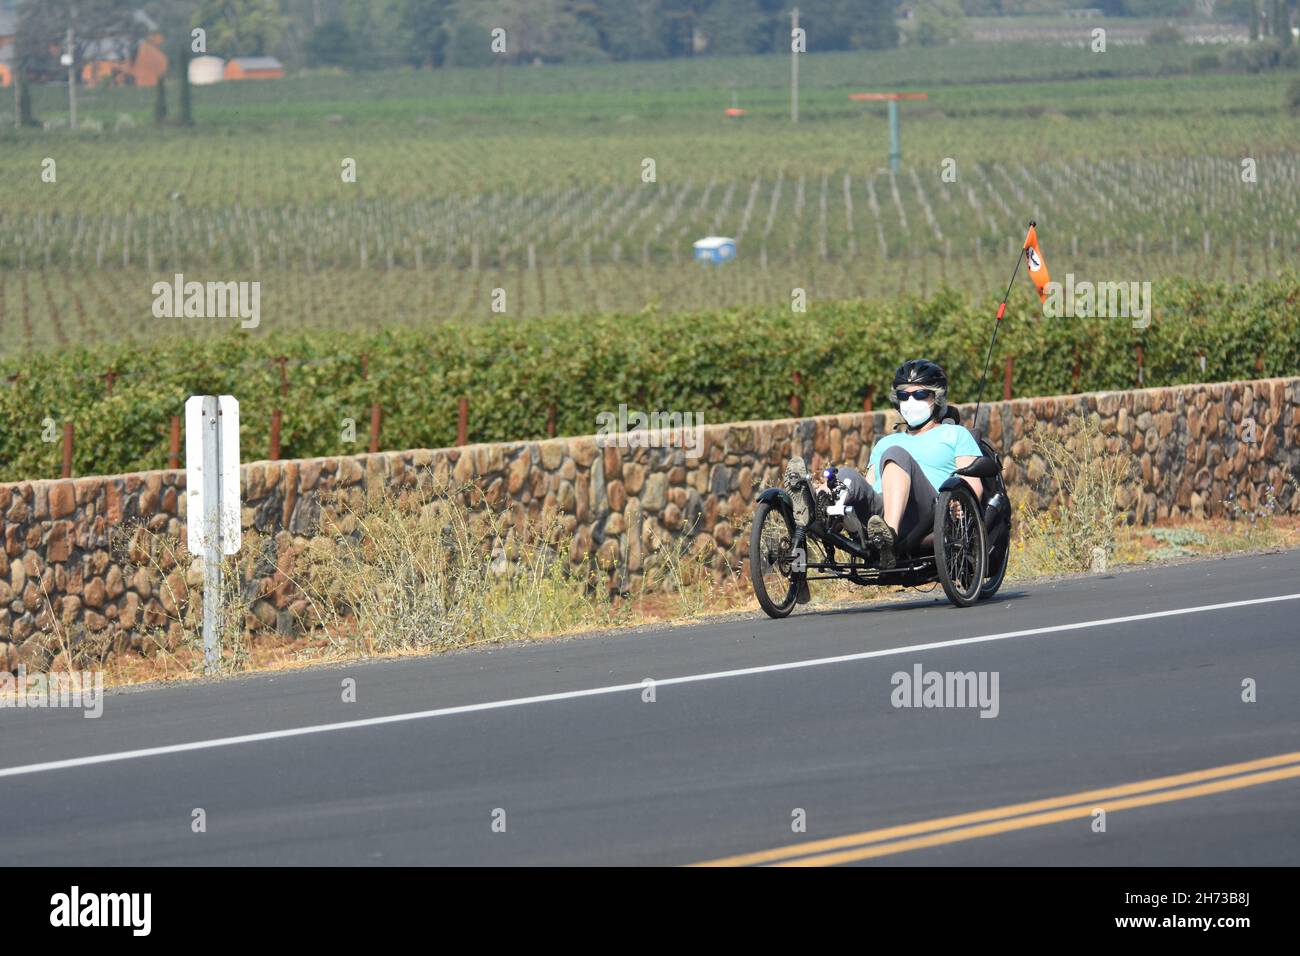 Fahren Sie auf dem Silverado-Radweg in der Weinregion Napa Valley im Norden Kaliforniens mit normalem Fahrrad und rekombinantem Fahrrad, zwischen Weintrauben und Autos Stockfoto